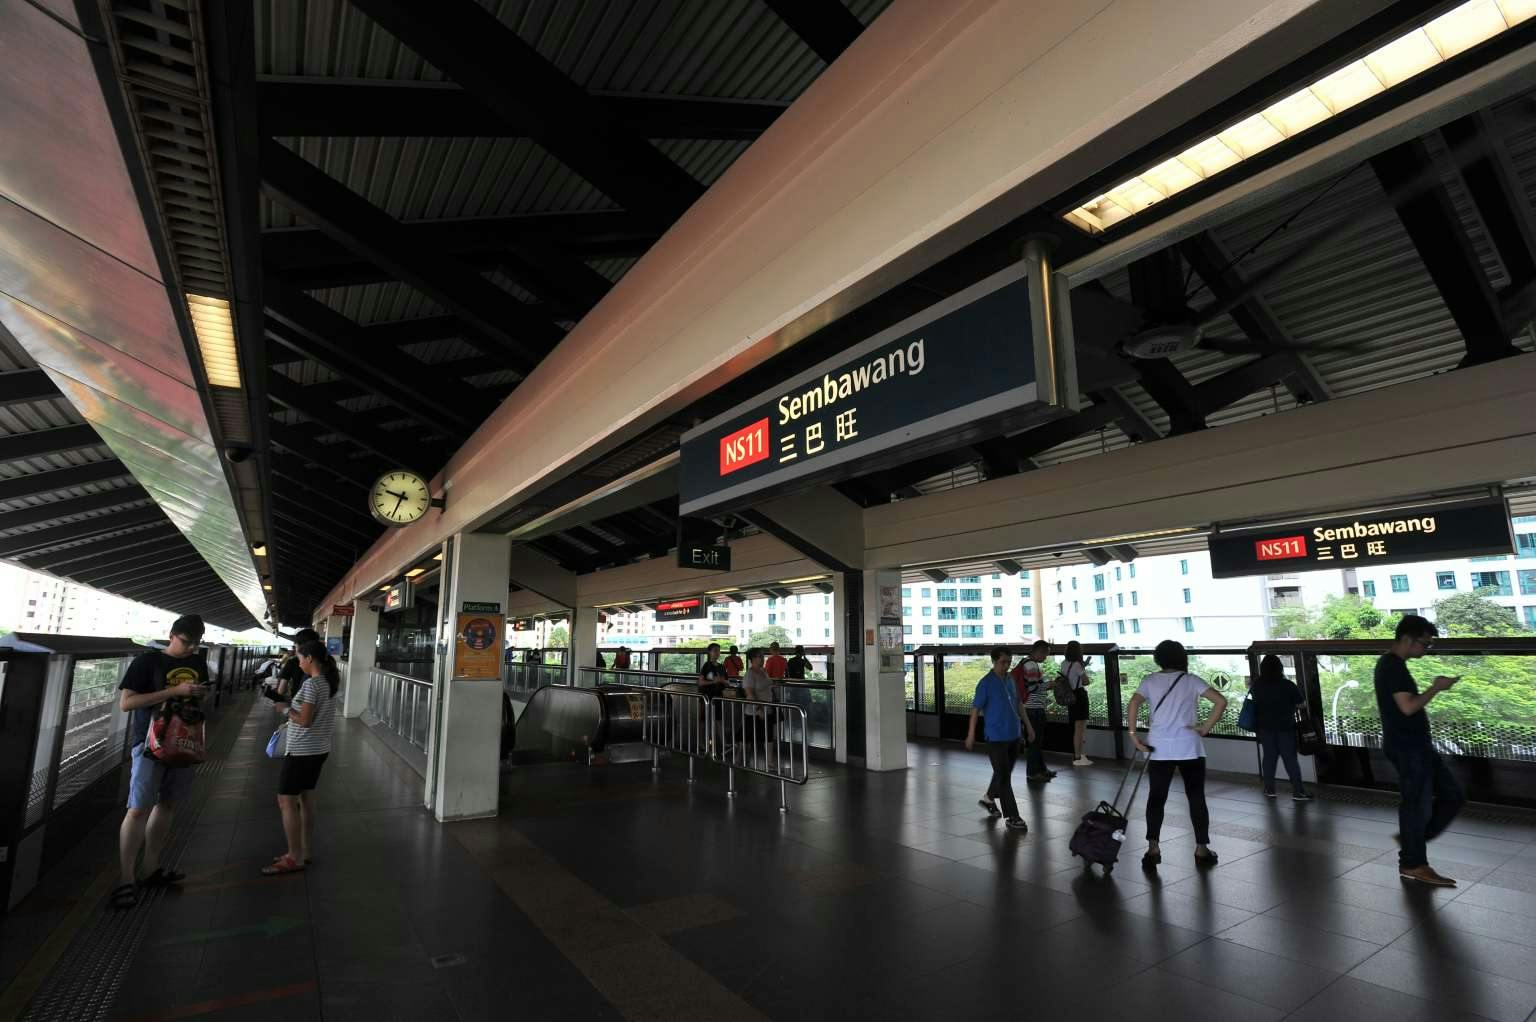  Sembawang MRT Station